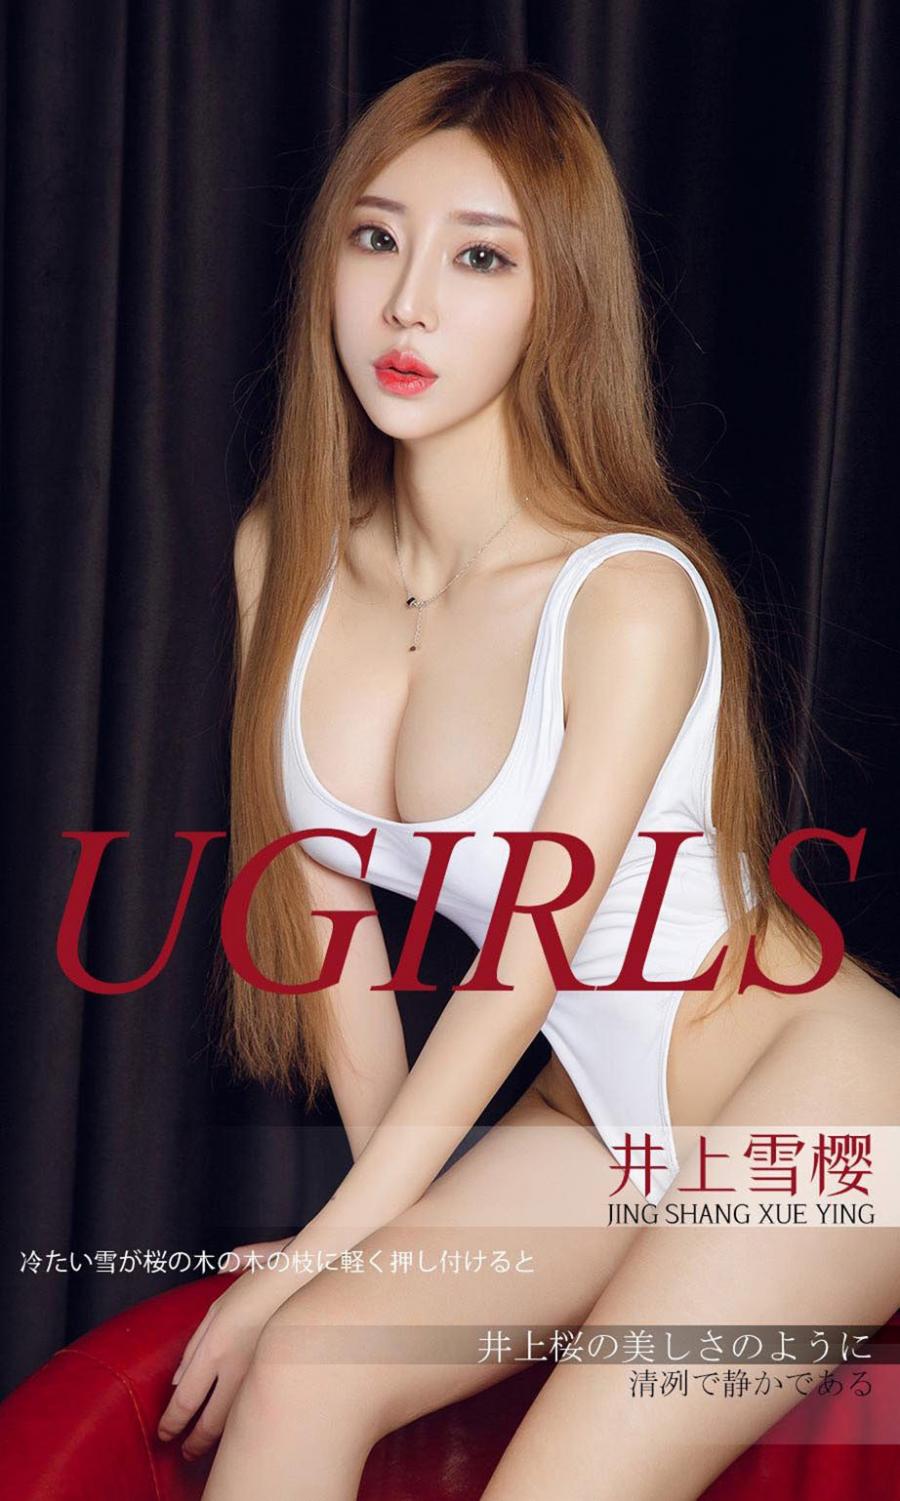 Ugirls App Vol. 1296 Jing Shang Xue Ying